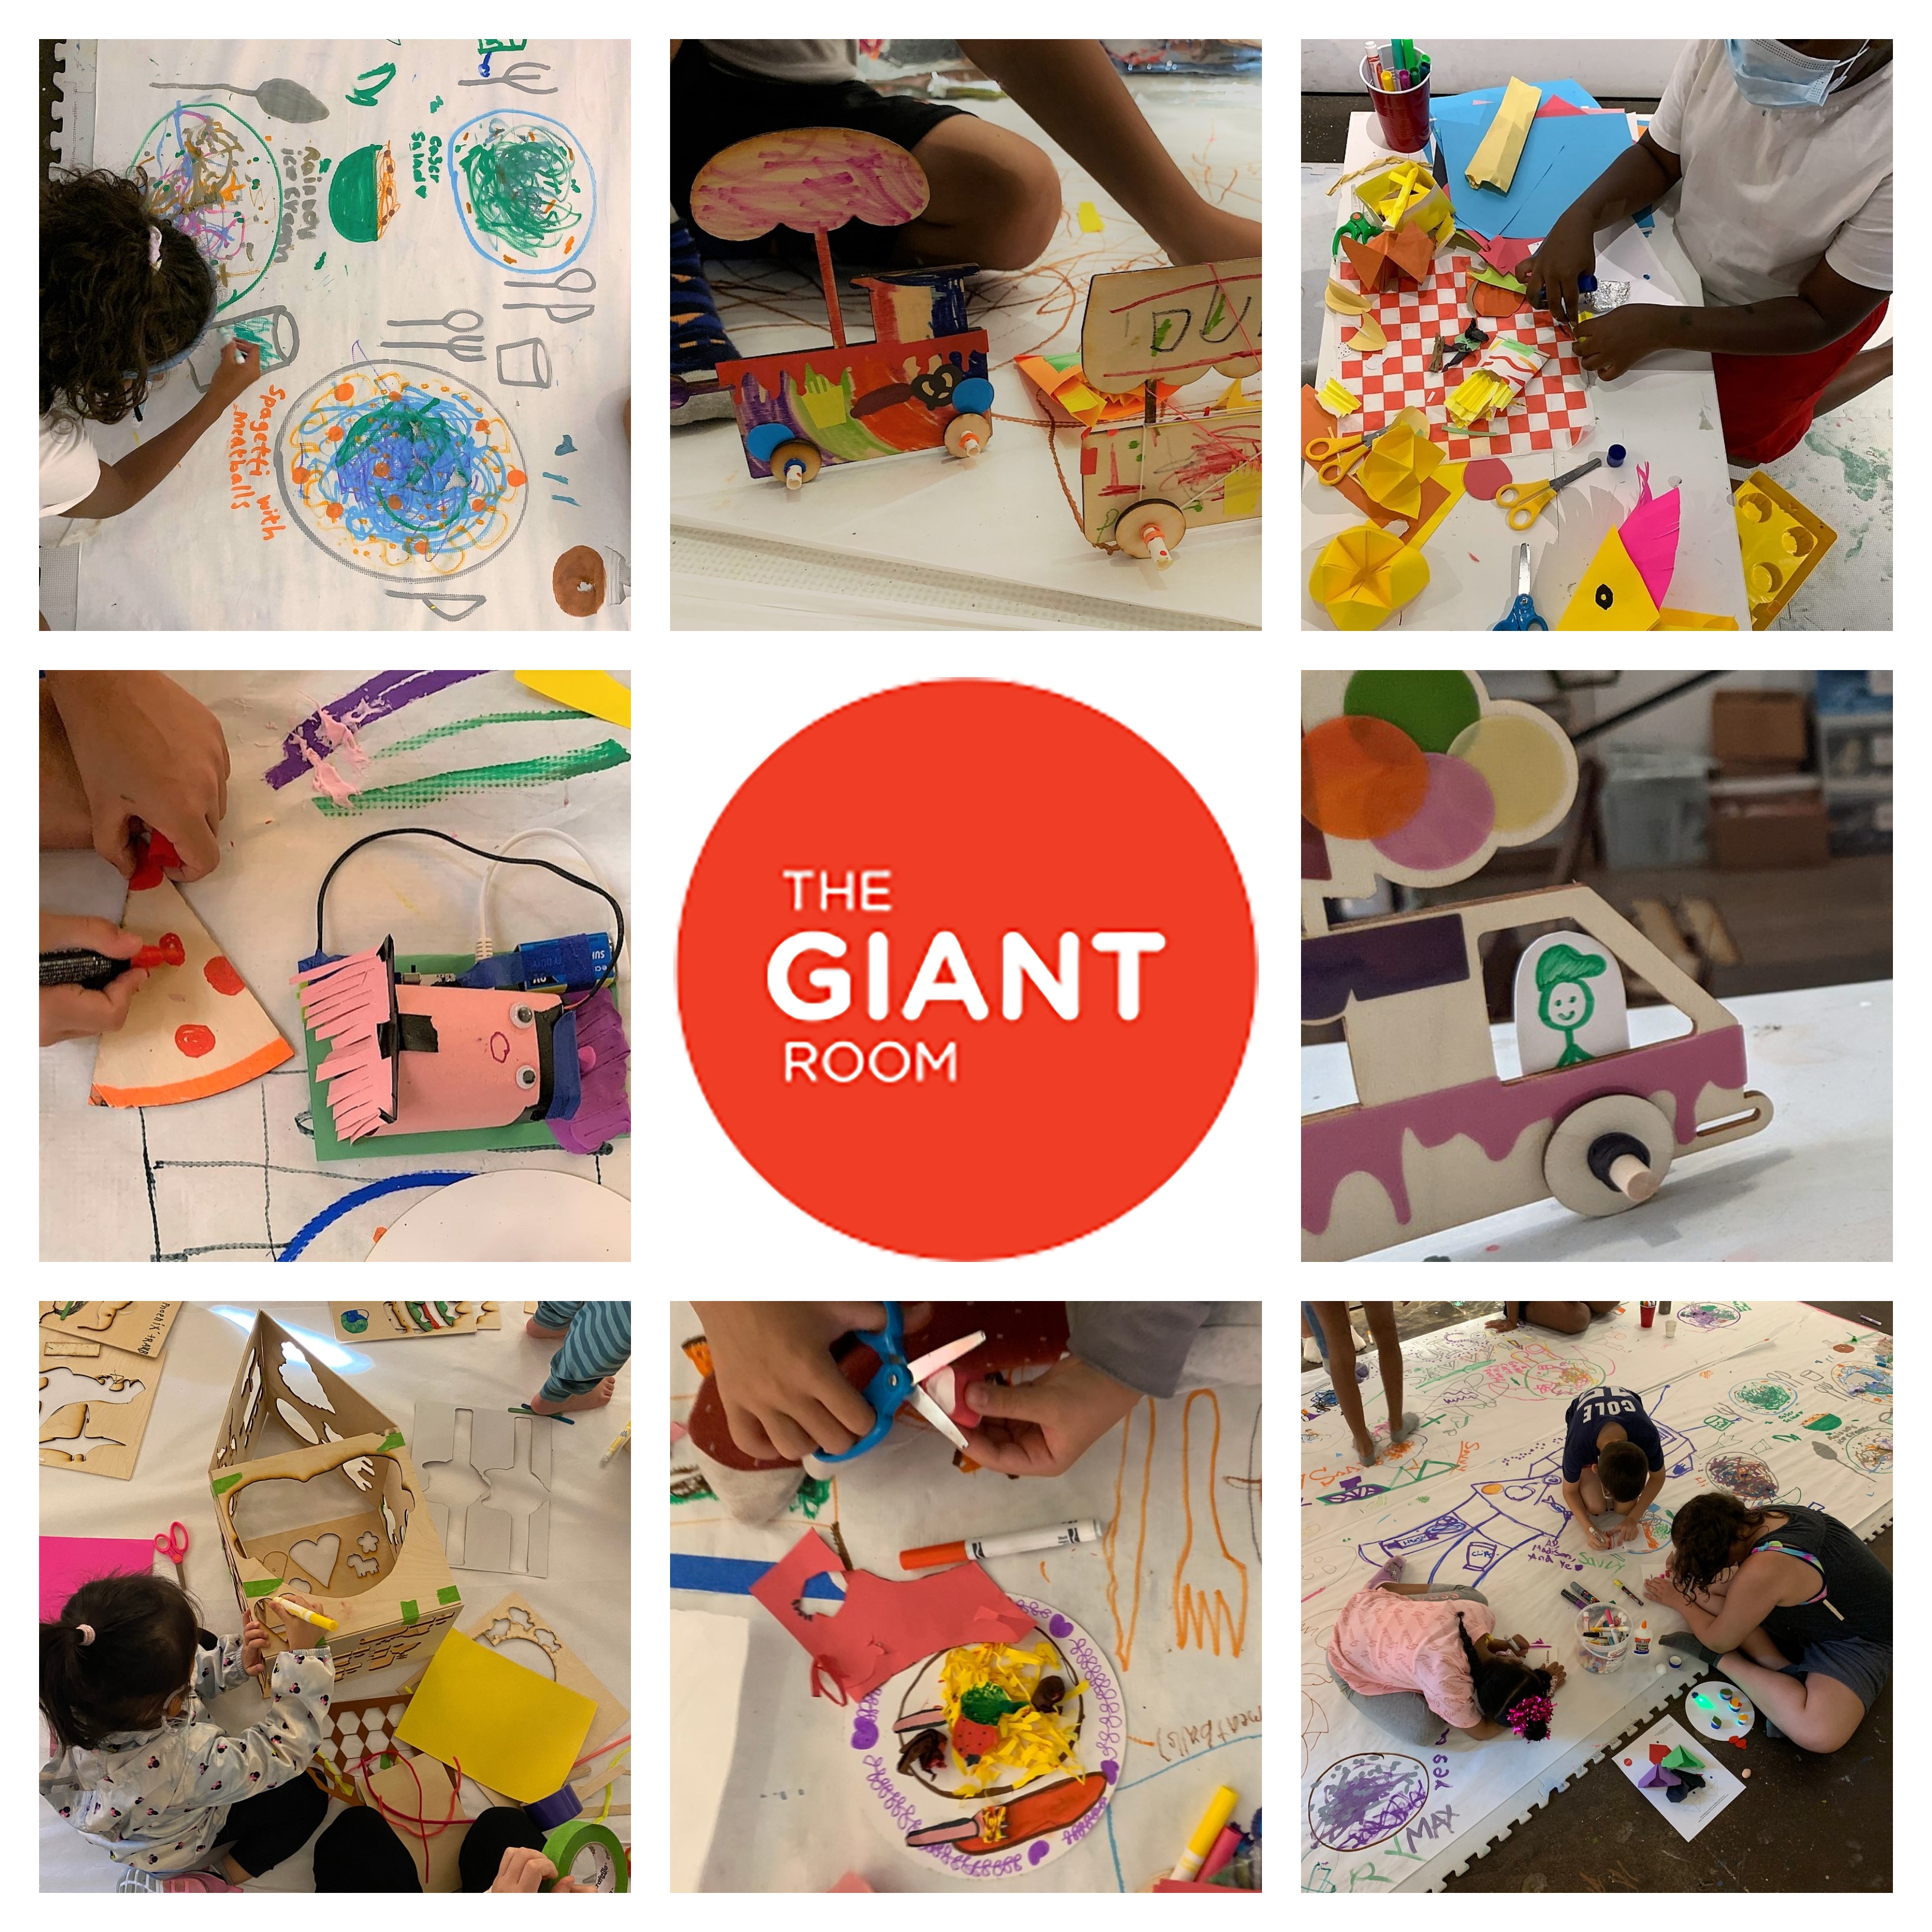 Los niños dibujan y hacen manualidades en ocho fotos que rodean un logotipo de círculo rojo que dice, The Giant Room.